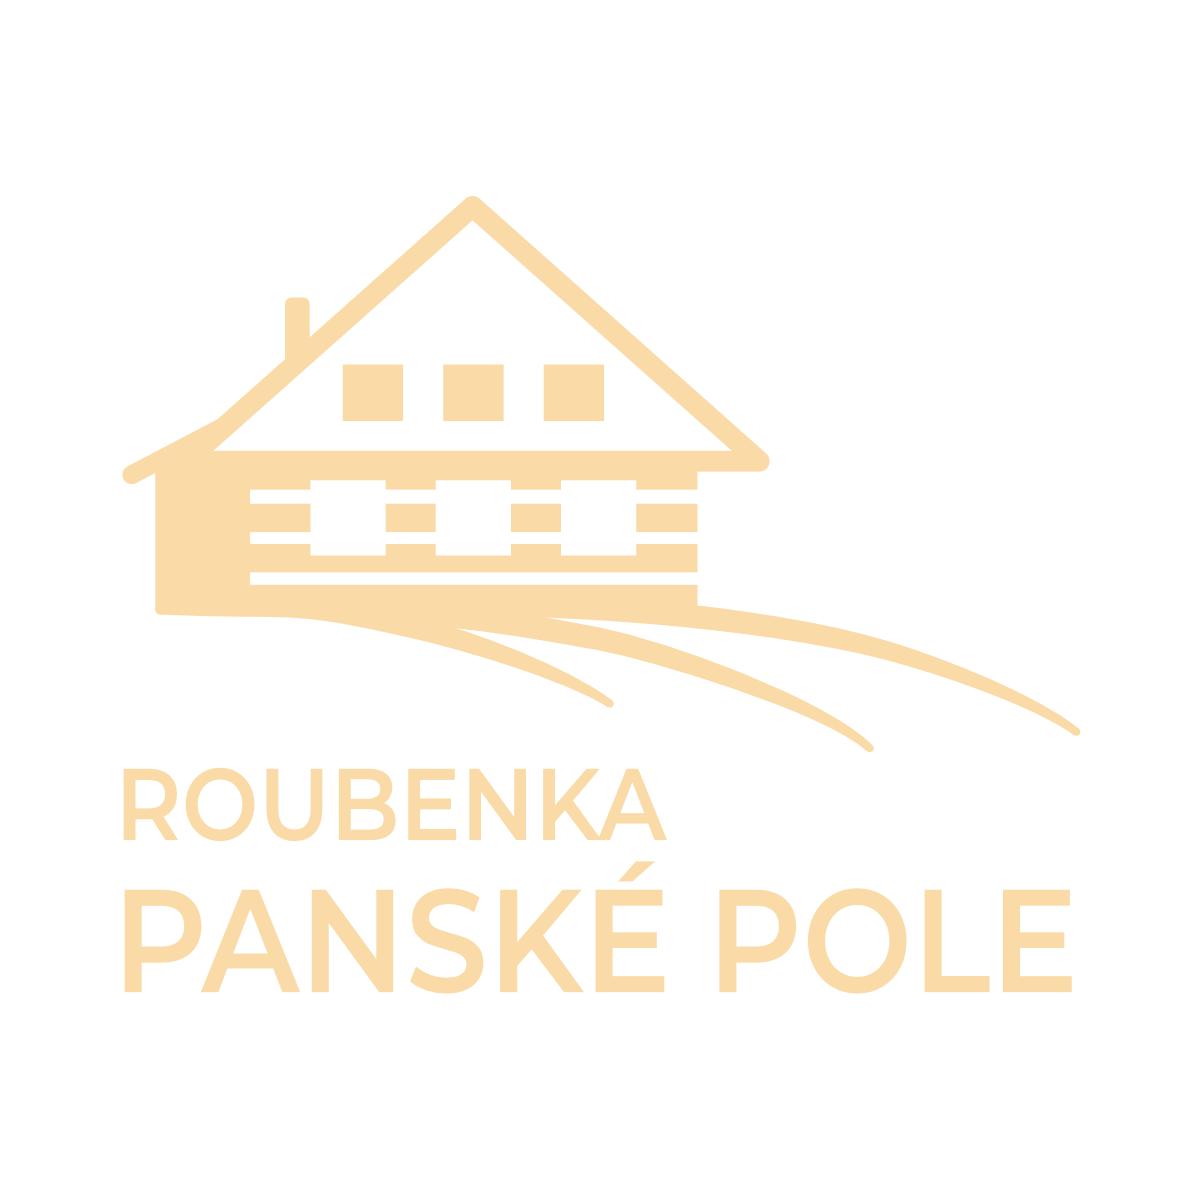 Roubenka Panské pole - logo bílé